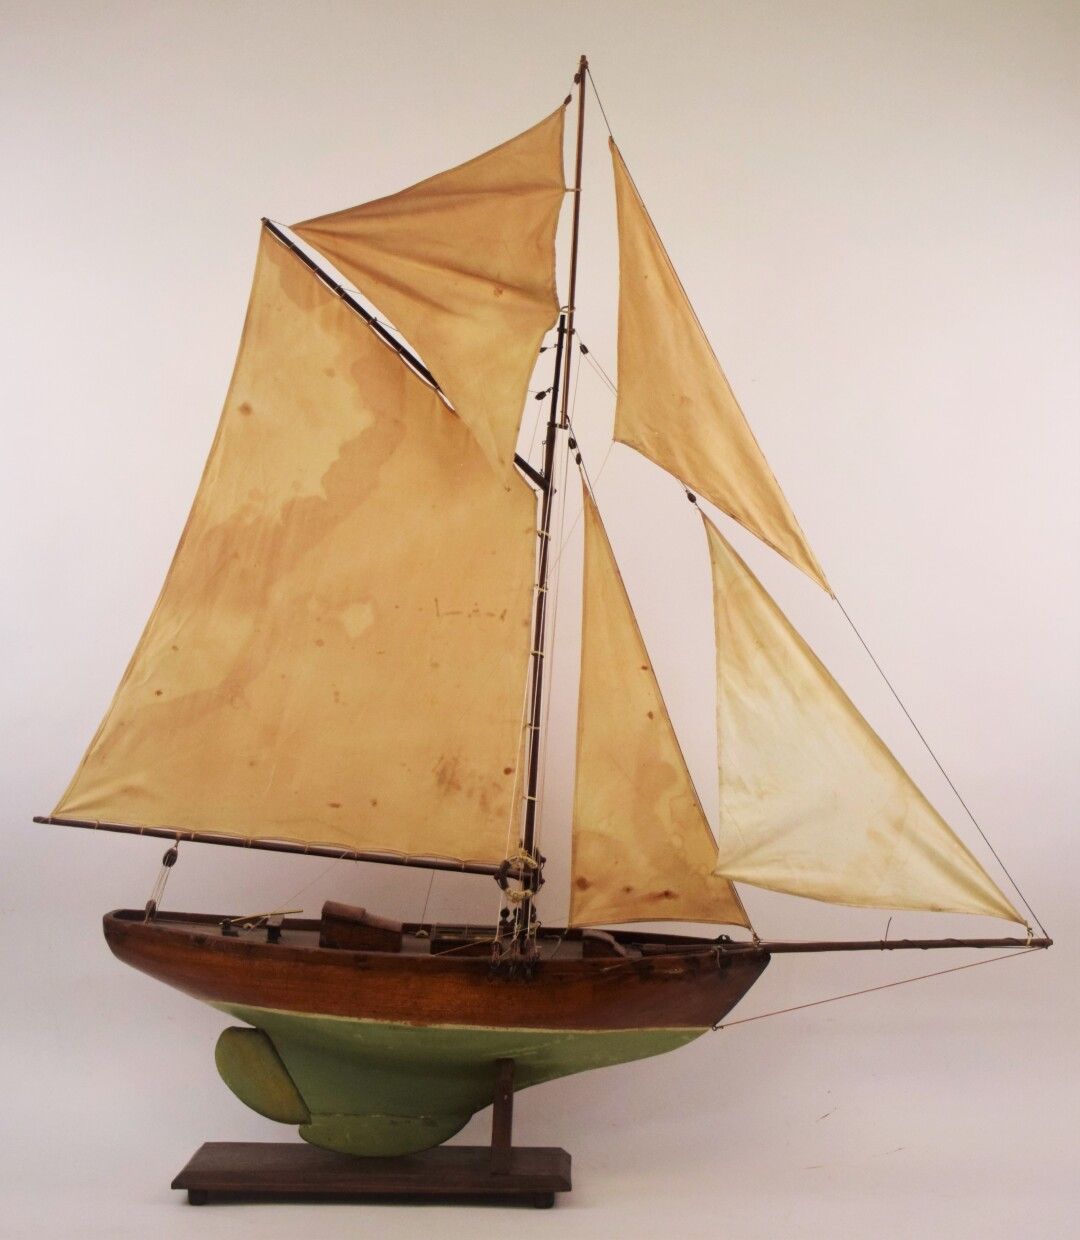 Null Grande modello di vela in legno con sartiame

Altezza: -Lunghezza: